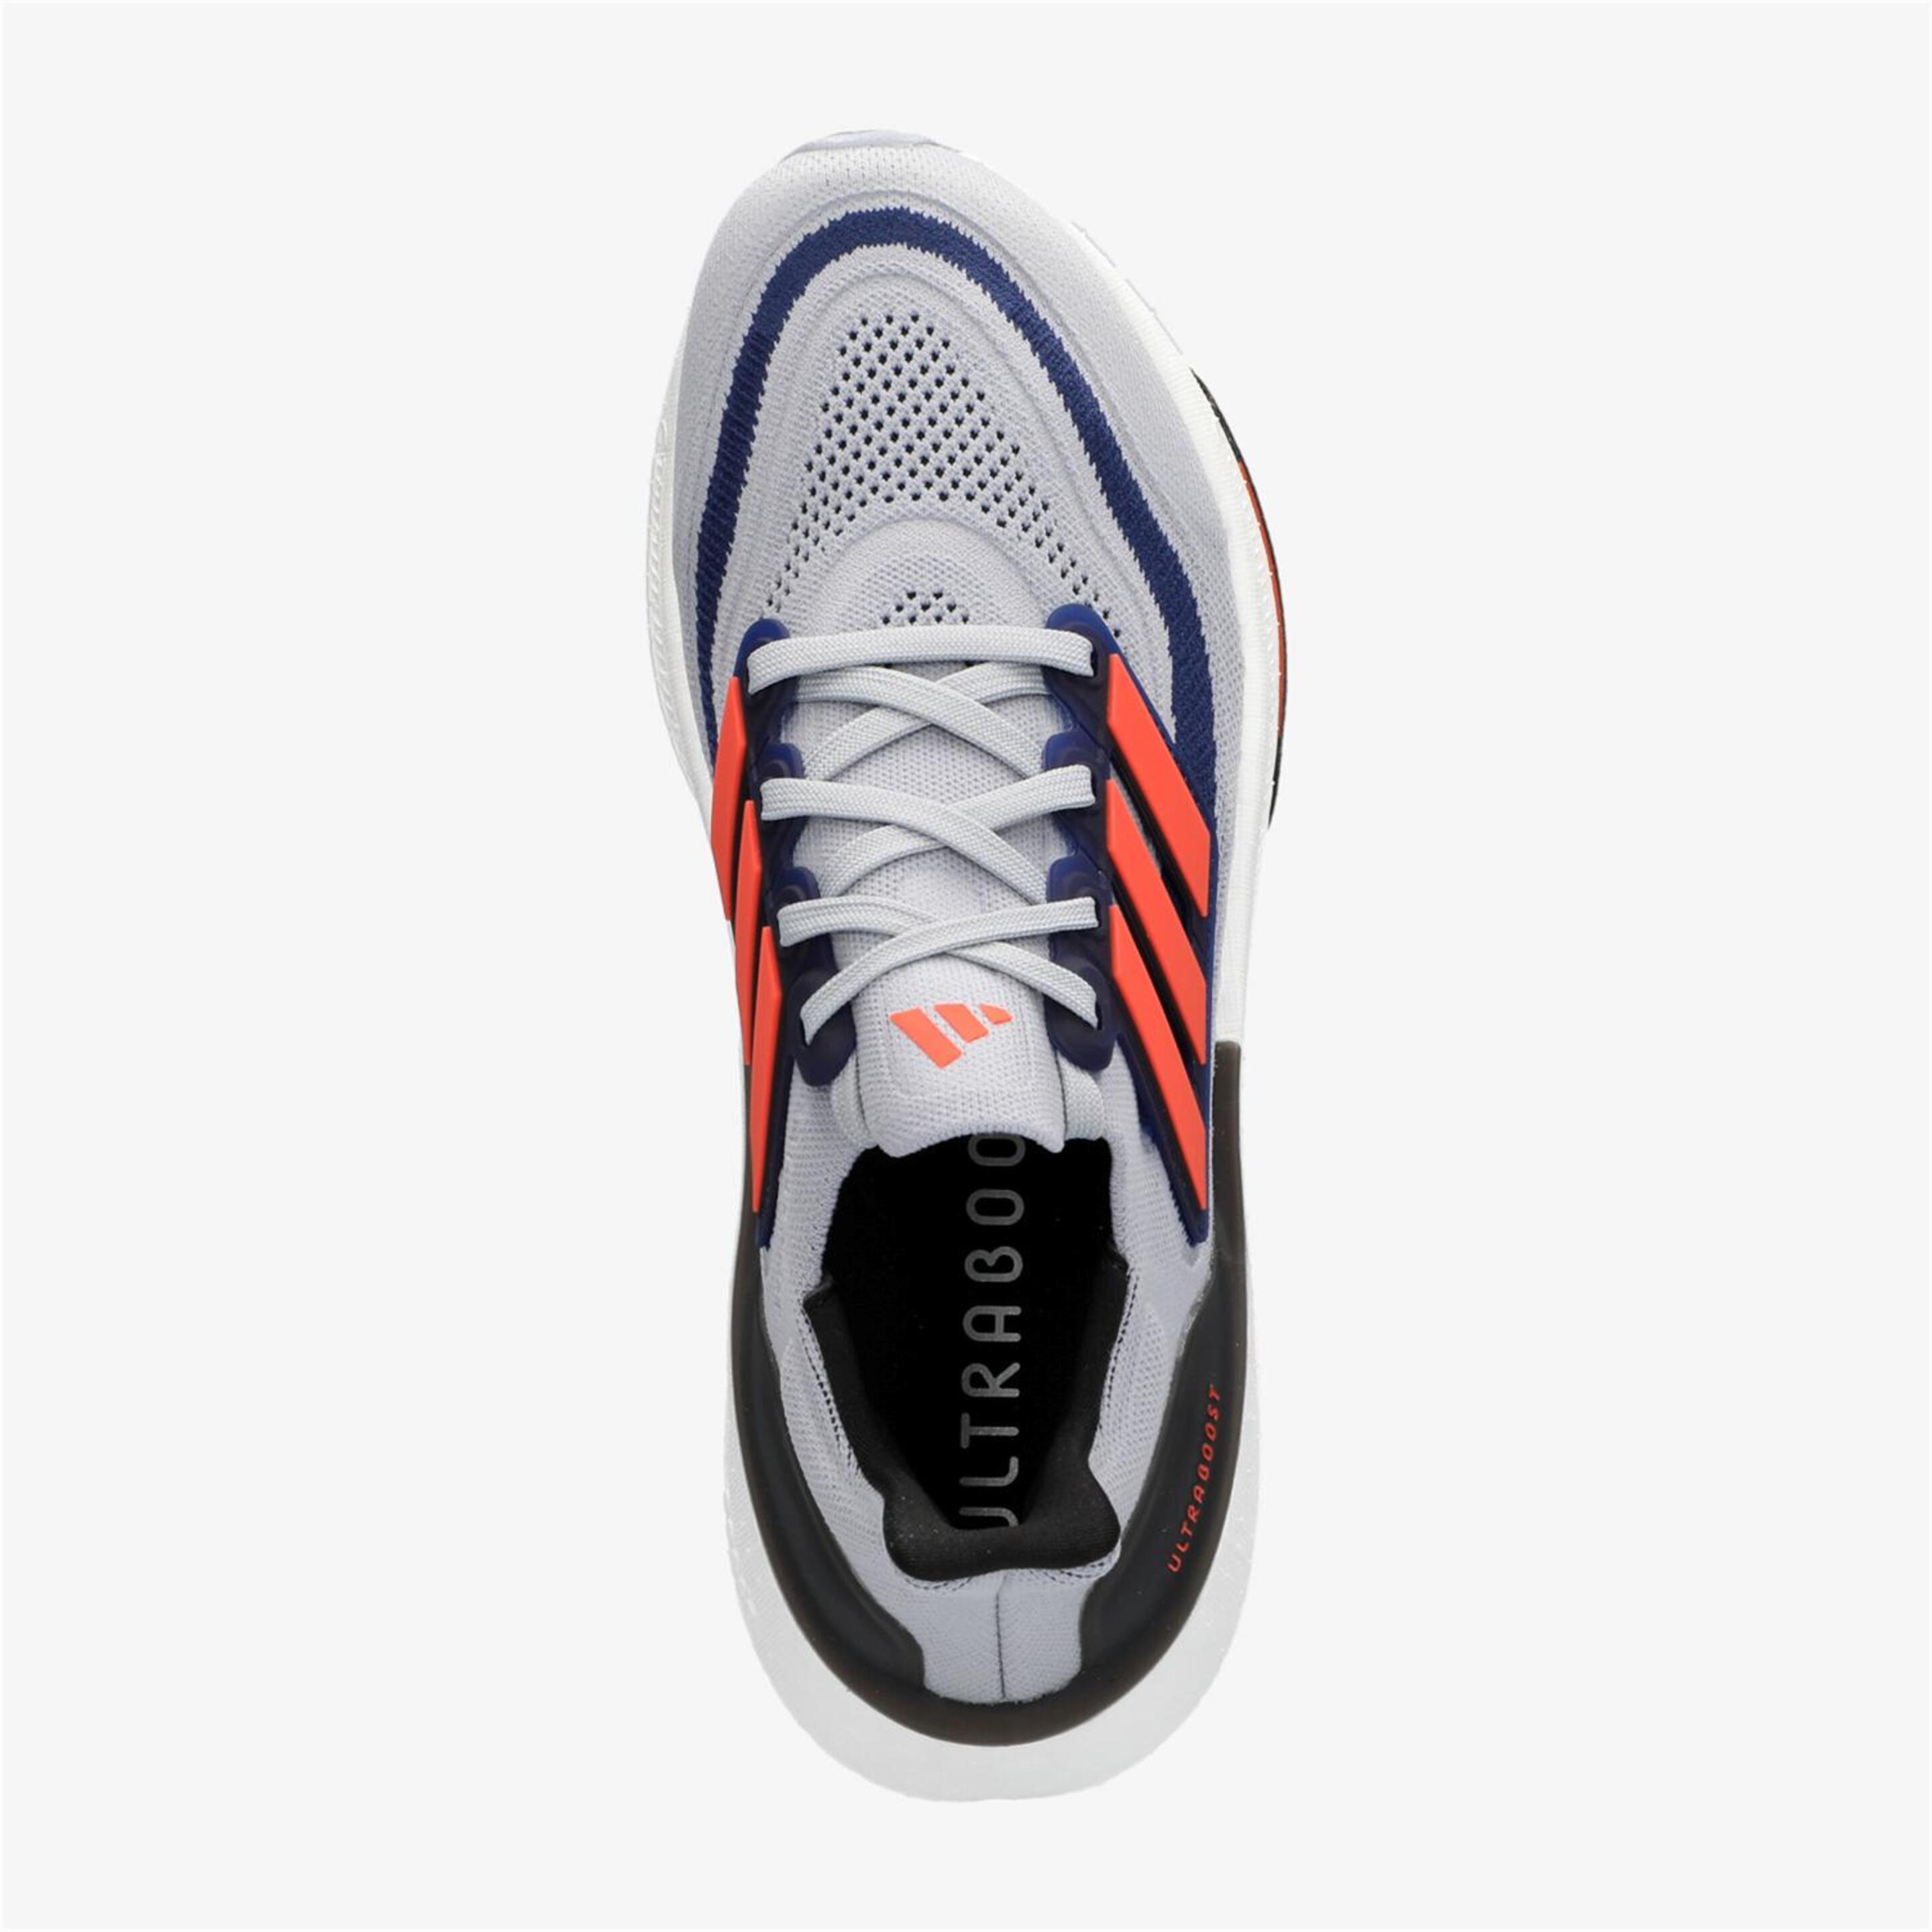 adidas UlTRaboost Light - Gris - Zapatillas Running Hombre | Sprinter